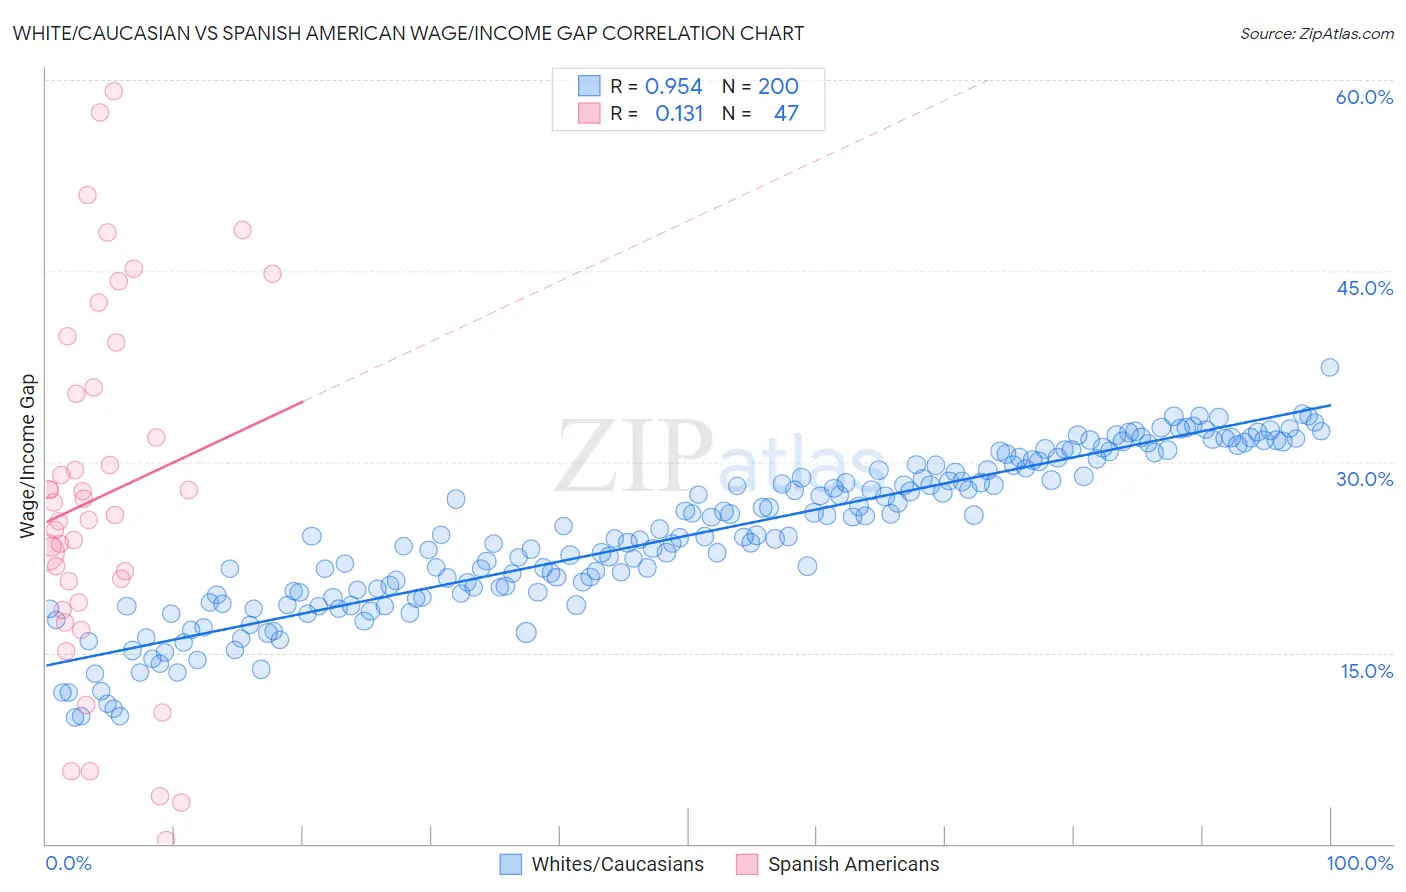 White/Caucasian vs Spanish American Wage/Income Gap